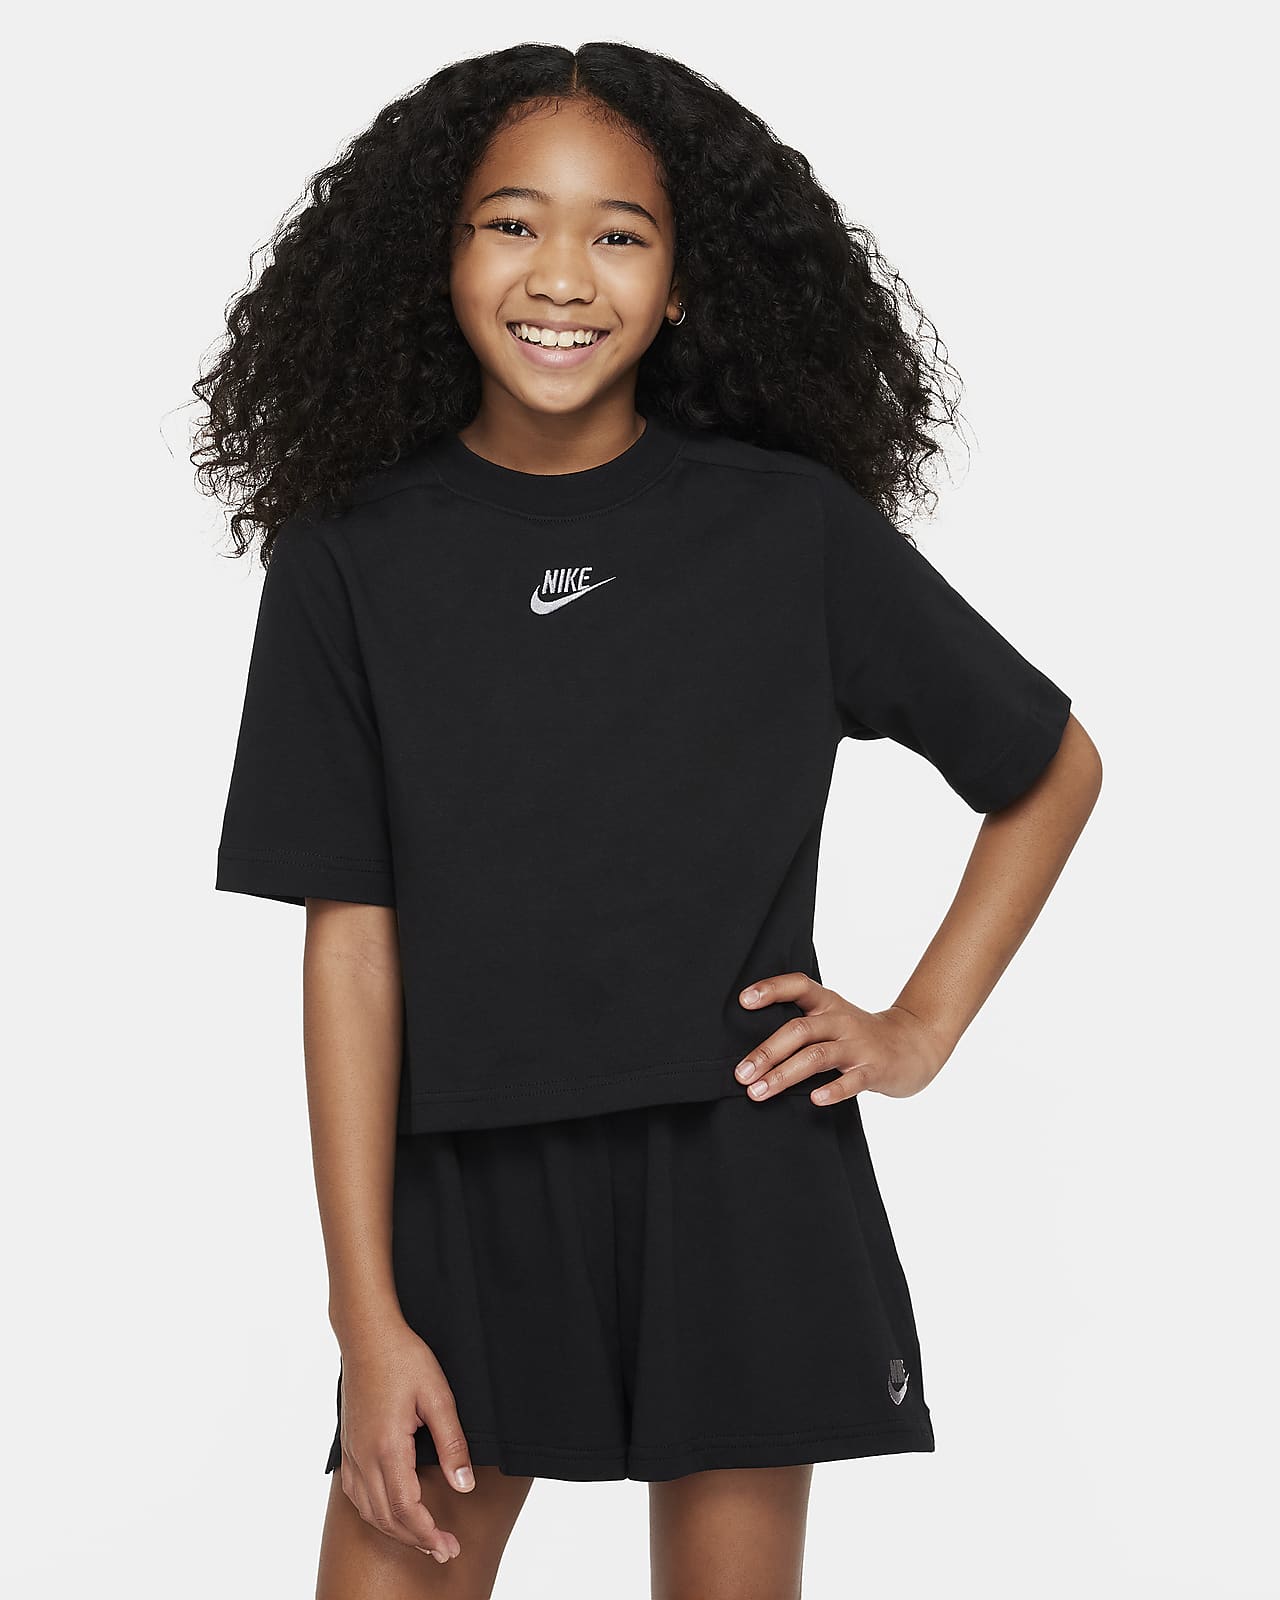 Nike Sportswear Older Kids' (Girls') Short-Sleeve Top